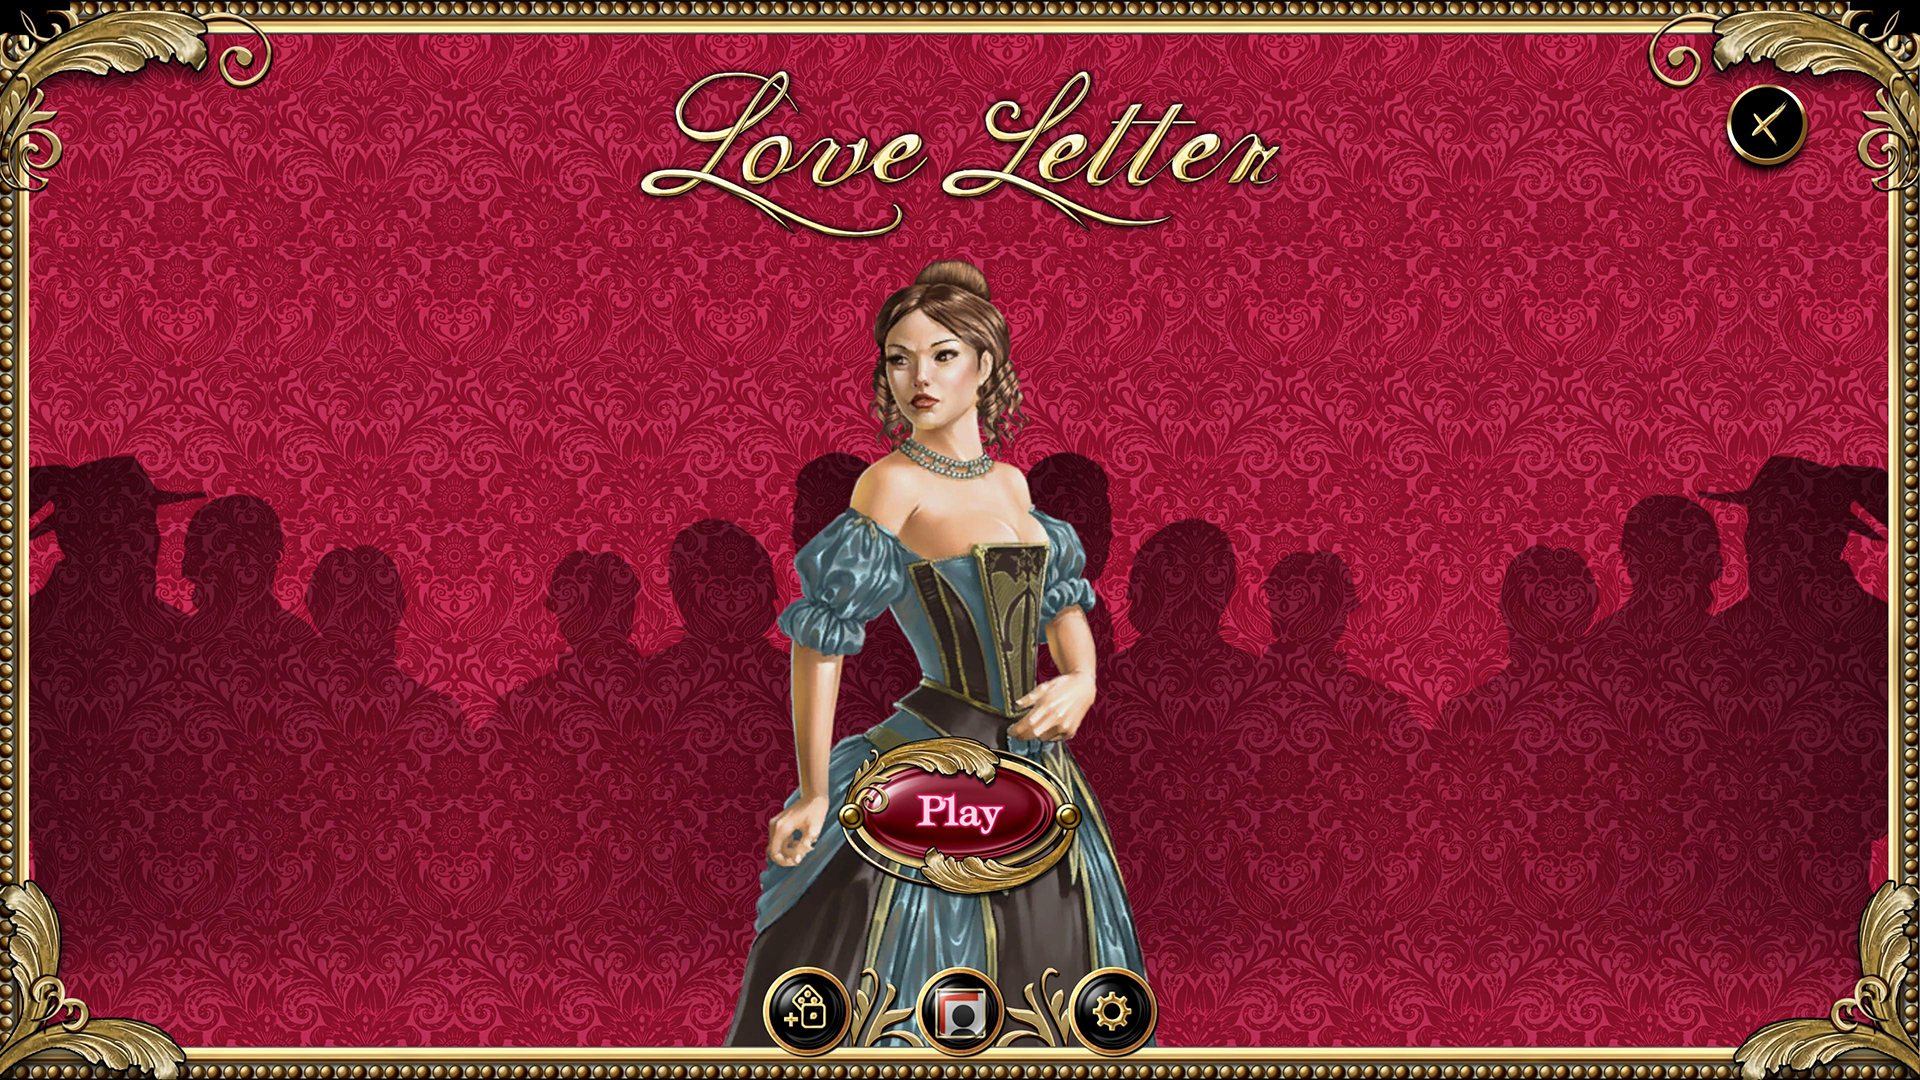 Love Letter Steam CD Key [$ 0.26]